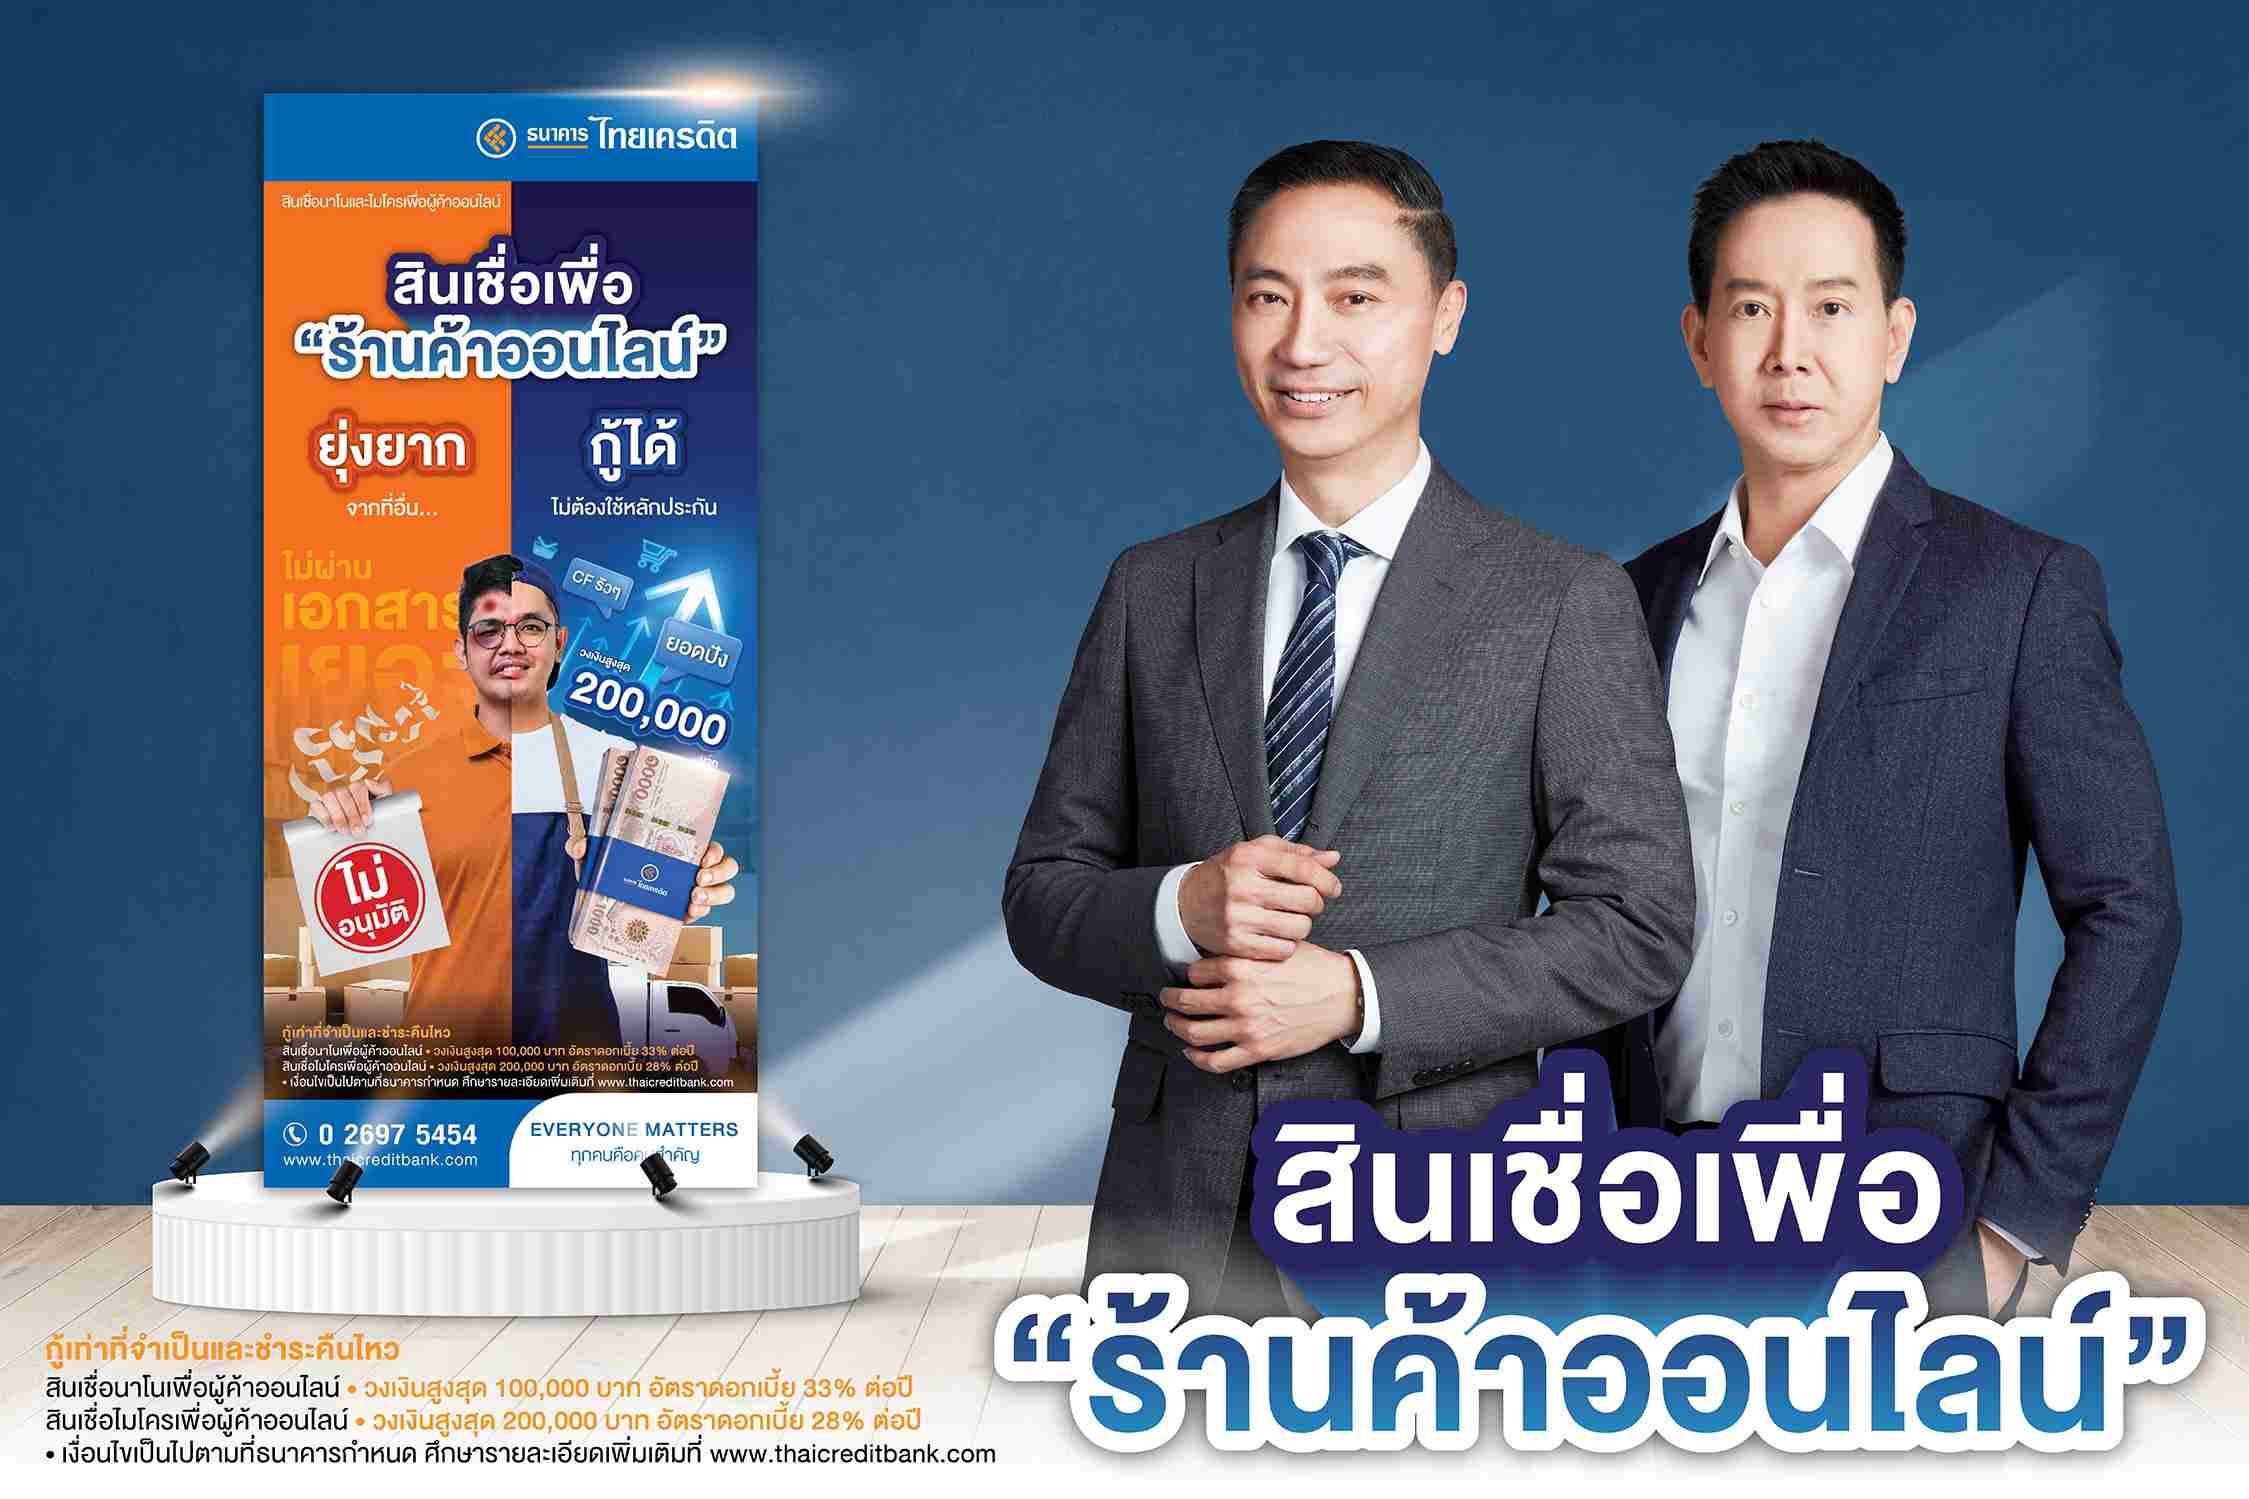 ธนาคารไทยเครดิต เปิดตัวสินเชื่อเพื่อร้านค้าออนไลน์ ไม่ต้องใช้หลักประกัน